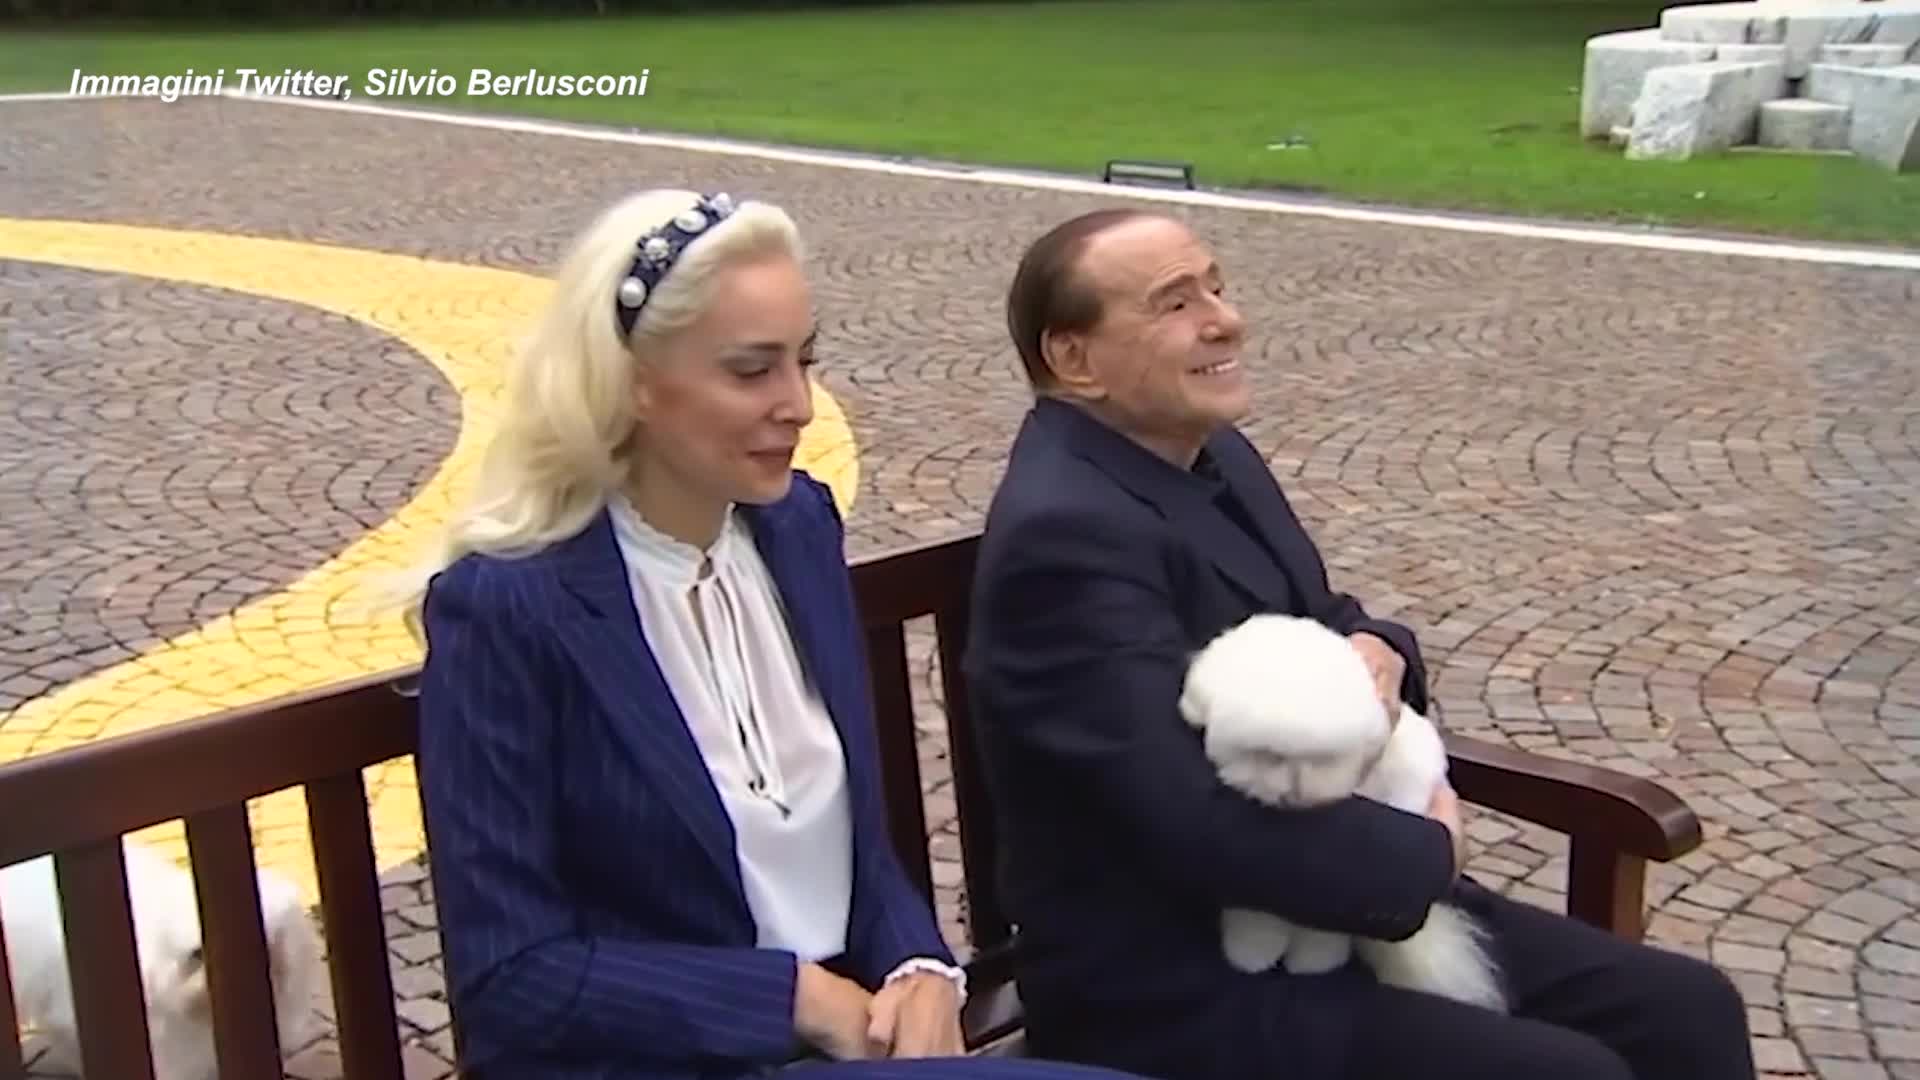 Una mongolfiera piena di cuori rossi: la sorpresa di compleanno di Fascina per Berlusconi - VIDEO